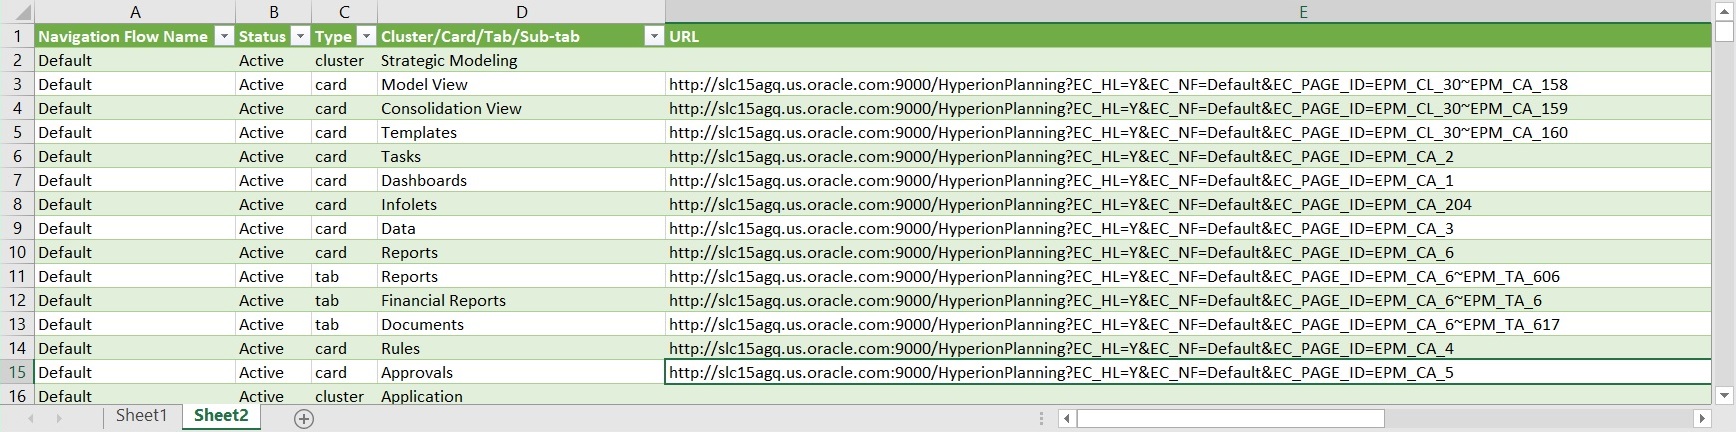 Archivo de exportación de URL directas de ejemplo tal y como se ve en Excel